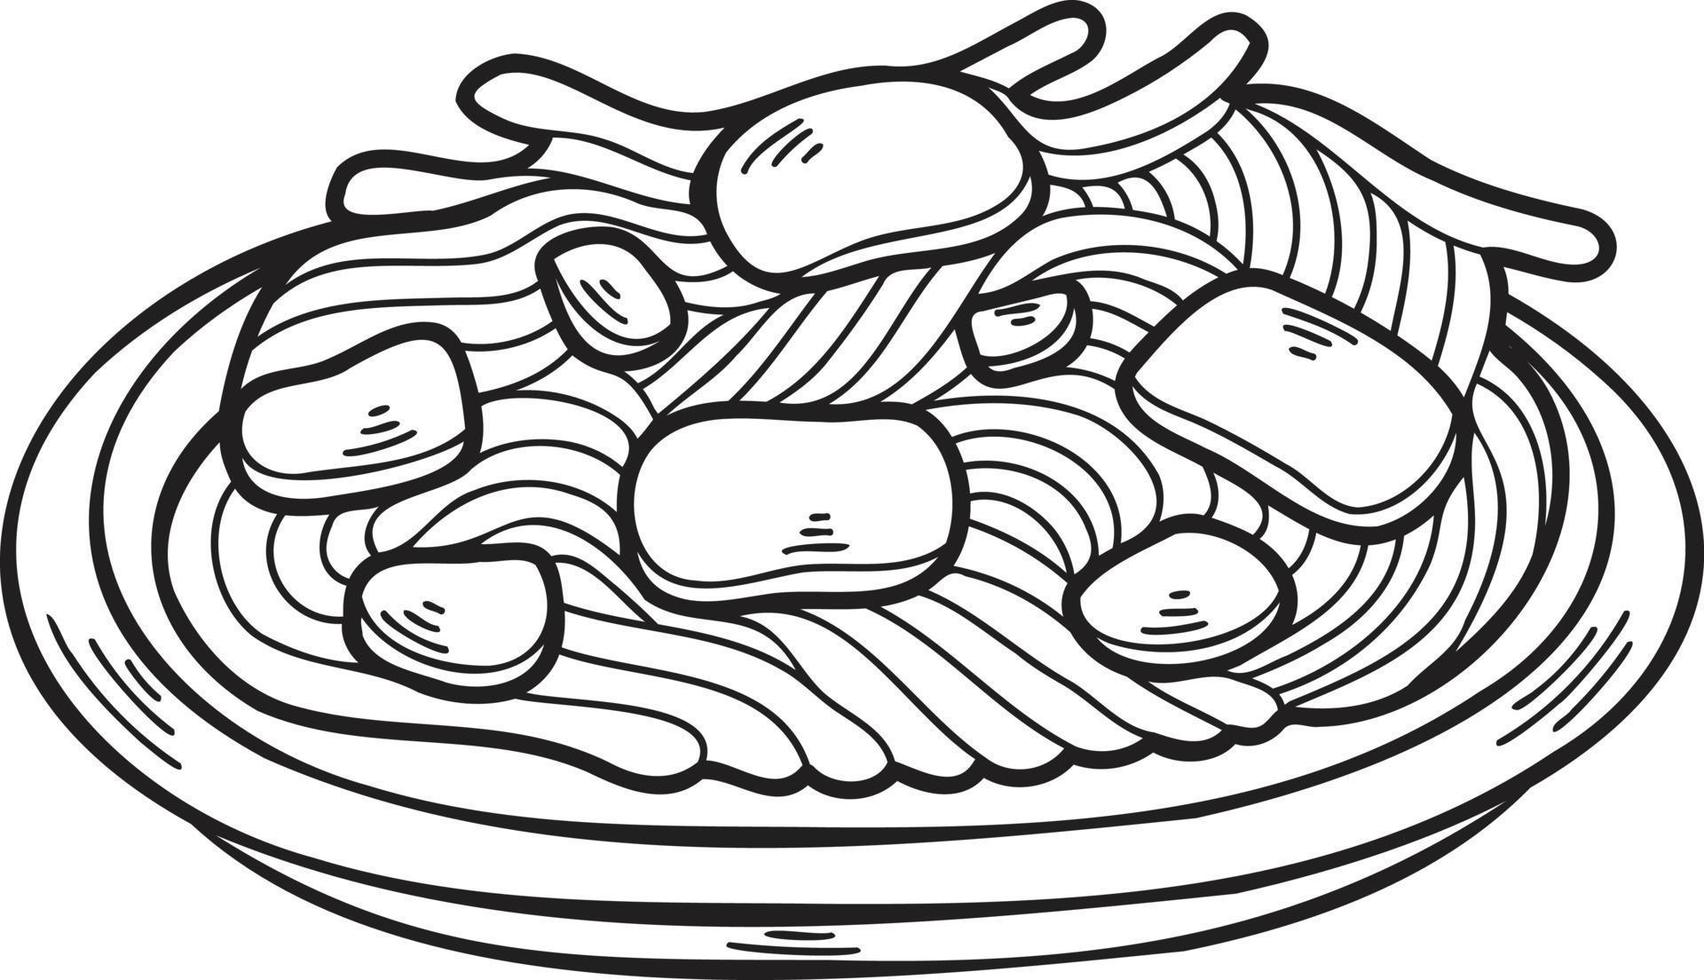 ilustração de comida chinesa e japonesa de macarrão desenhado à mão vetor